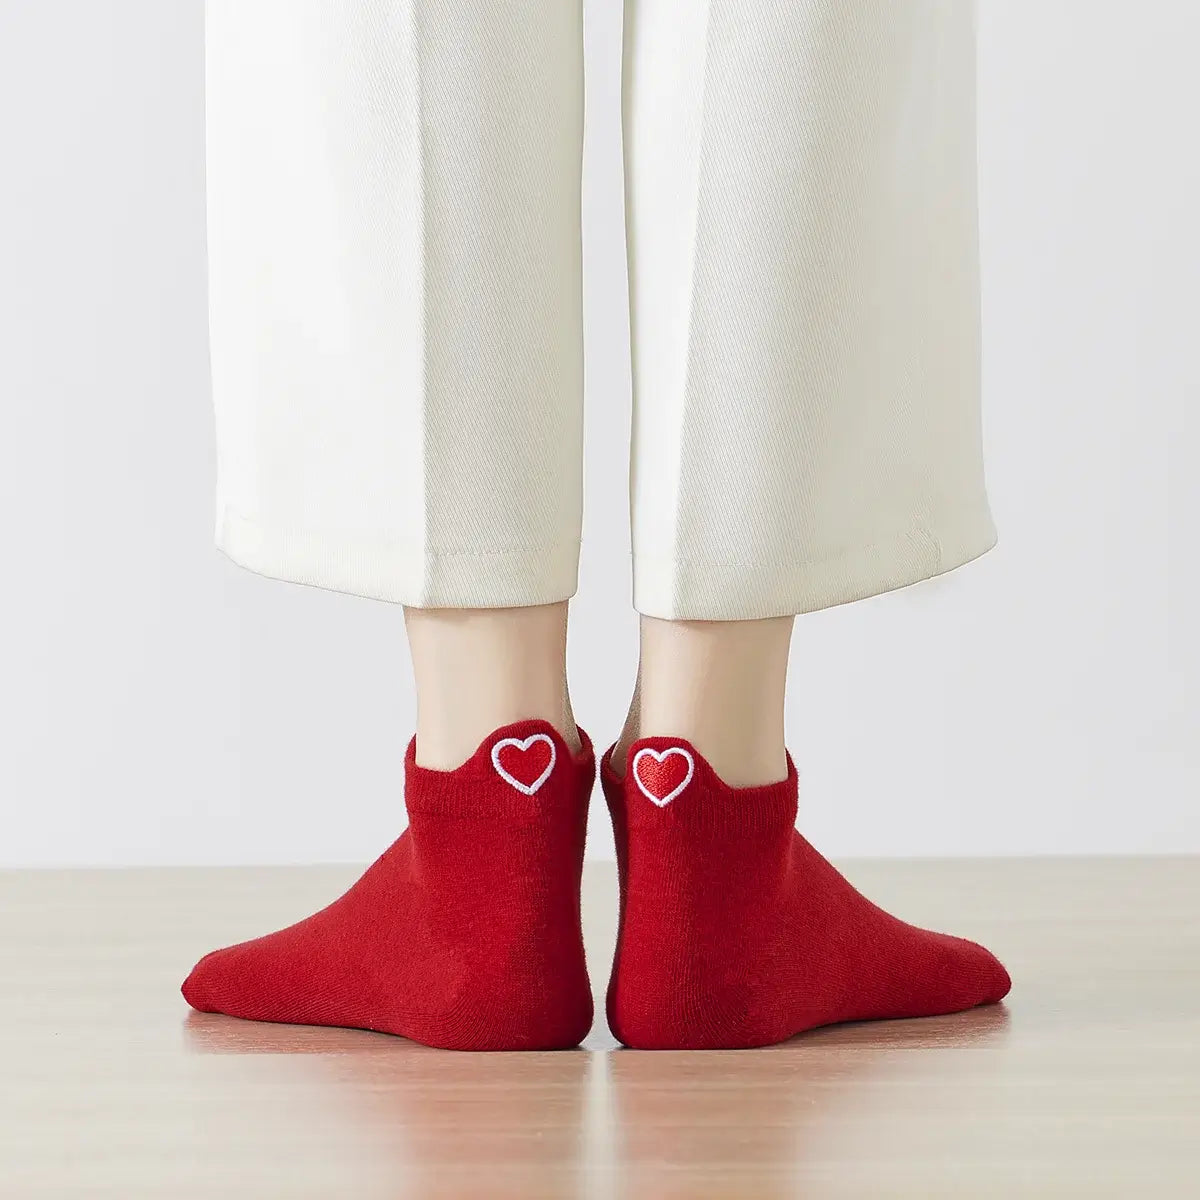 Chaussettes rouge en coton à languette cœur rouge pour femme | Chaussettes douces et respirantes | Fabriquées à partir de matériaux de haute qualité | Un cadeau parfait pour les femmes de tous âges